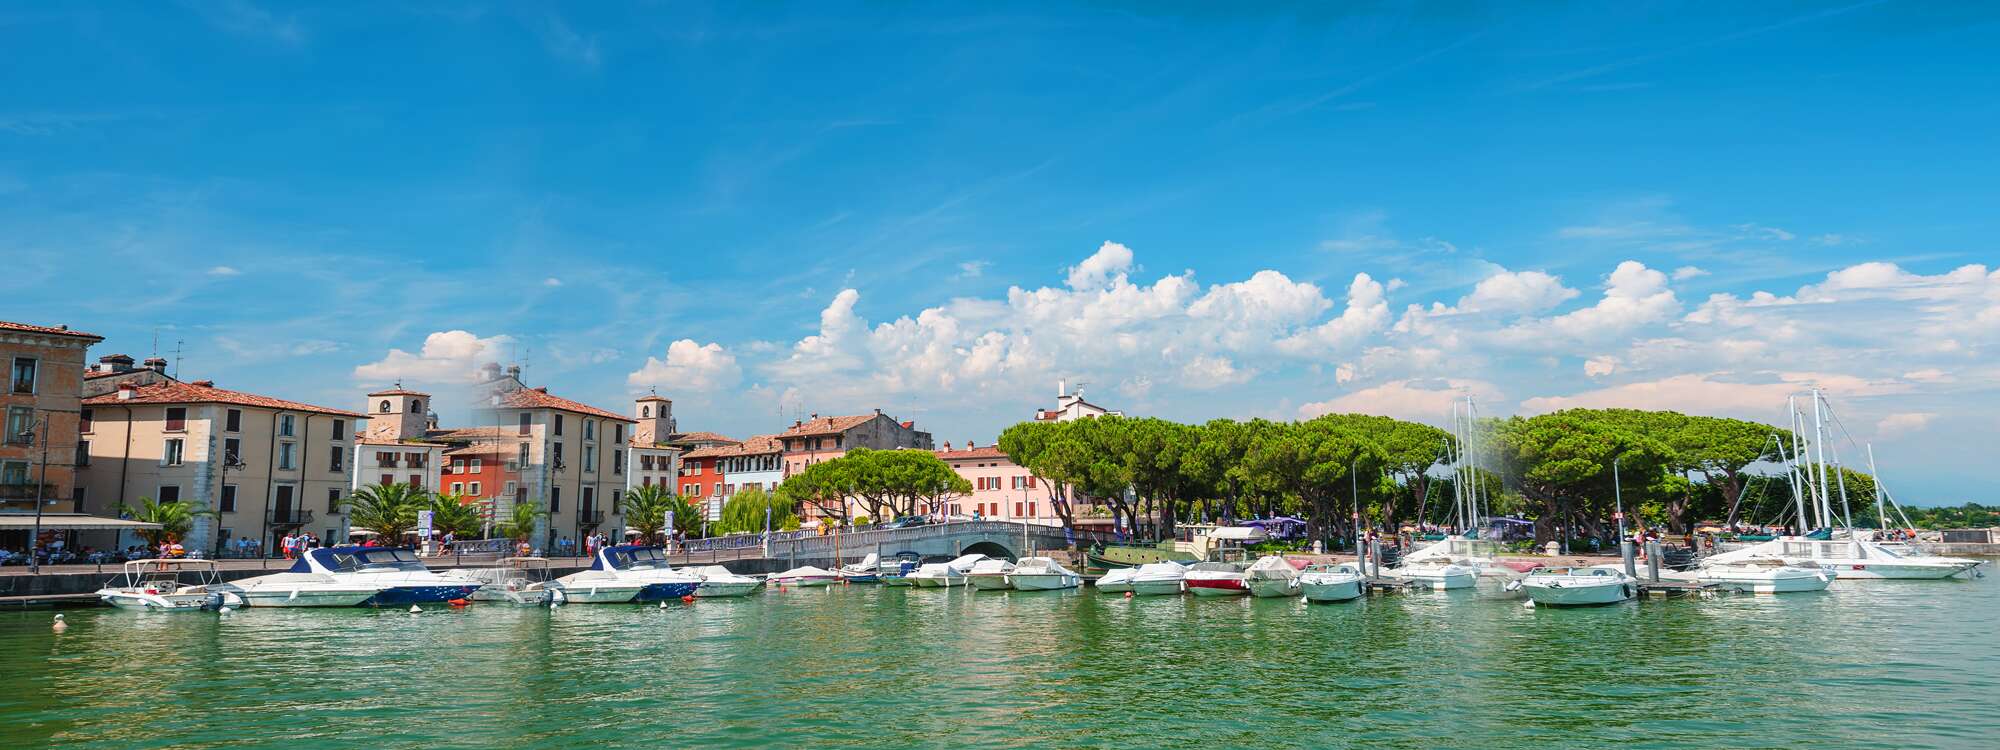 Kleine Yachthafen in Desenzano - Italien in der Region Gardasee